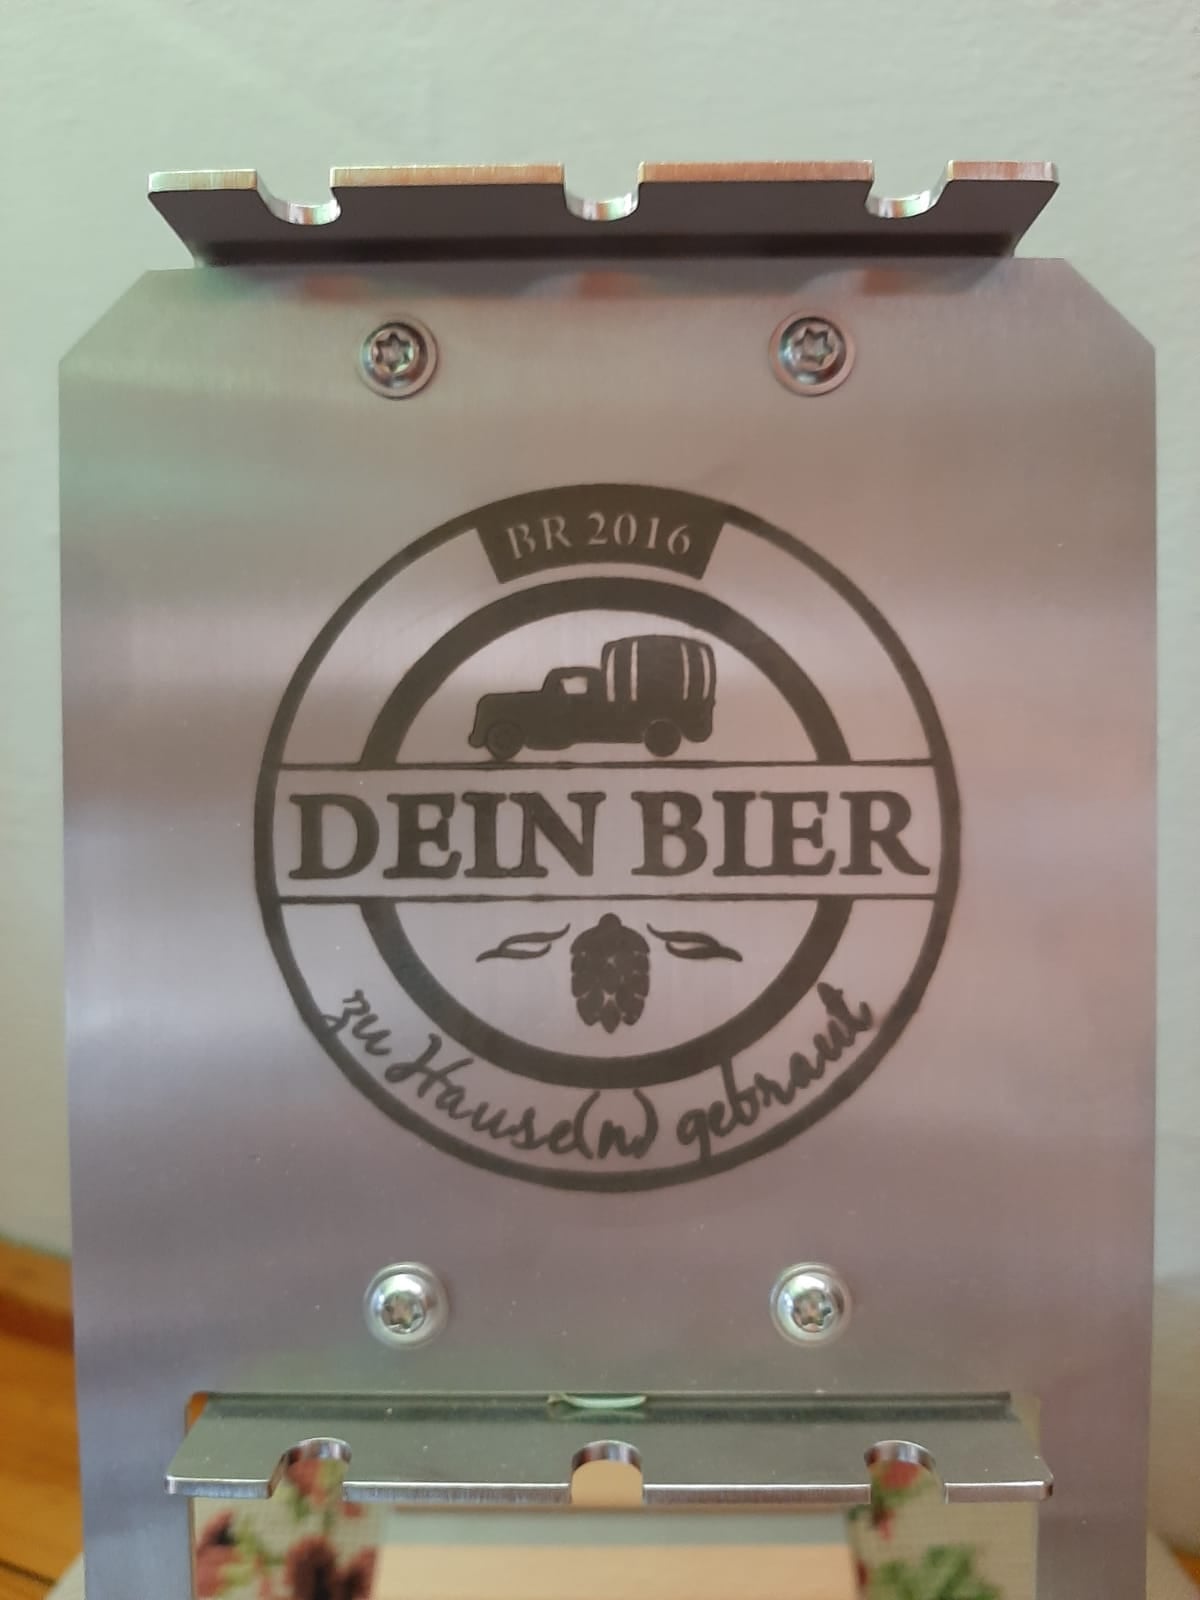 Unserer neue Bierstachel Station für unserem frisch abgefüllten Dein Bier Bock.